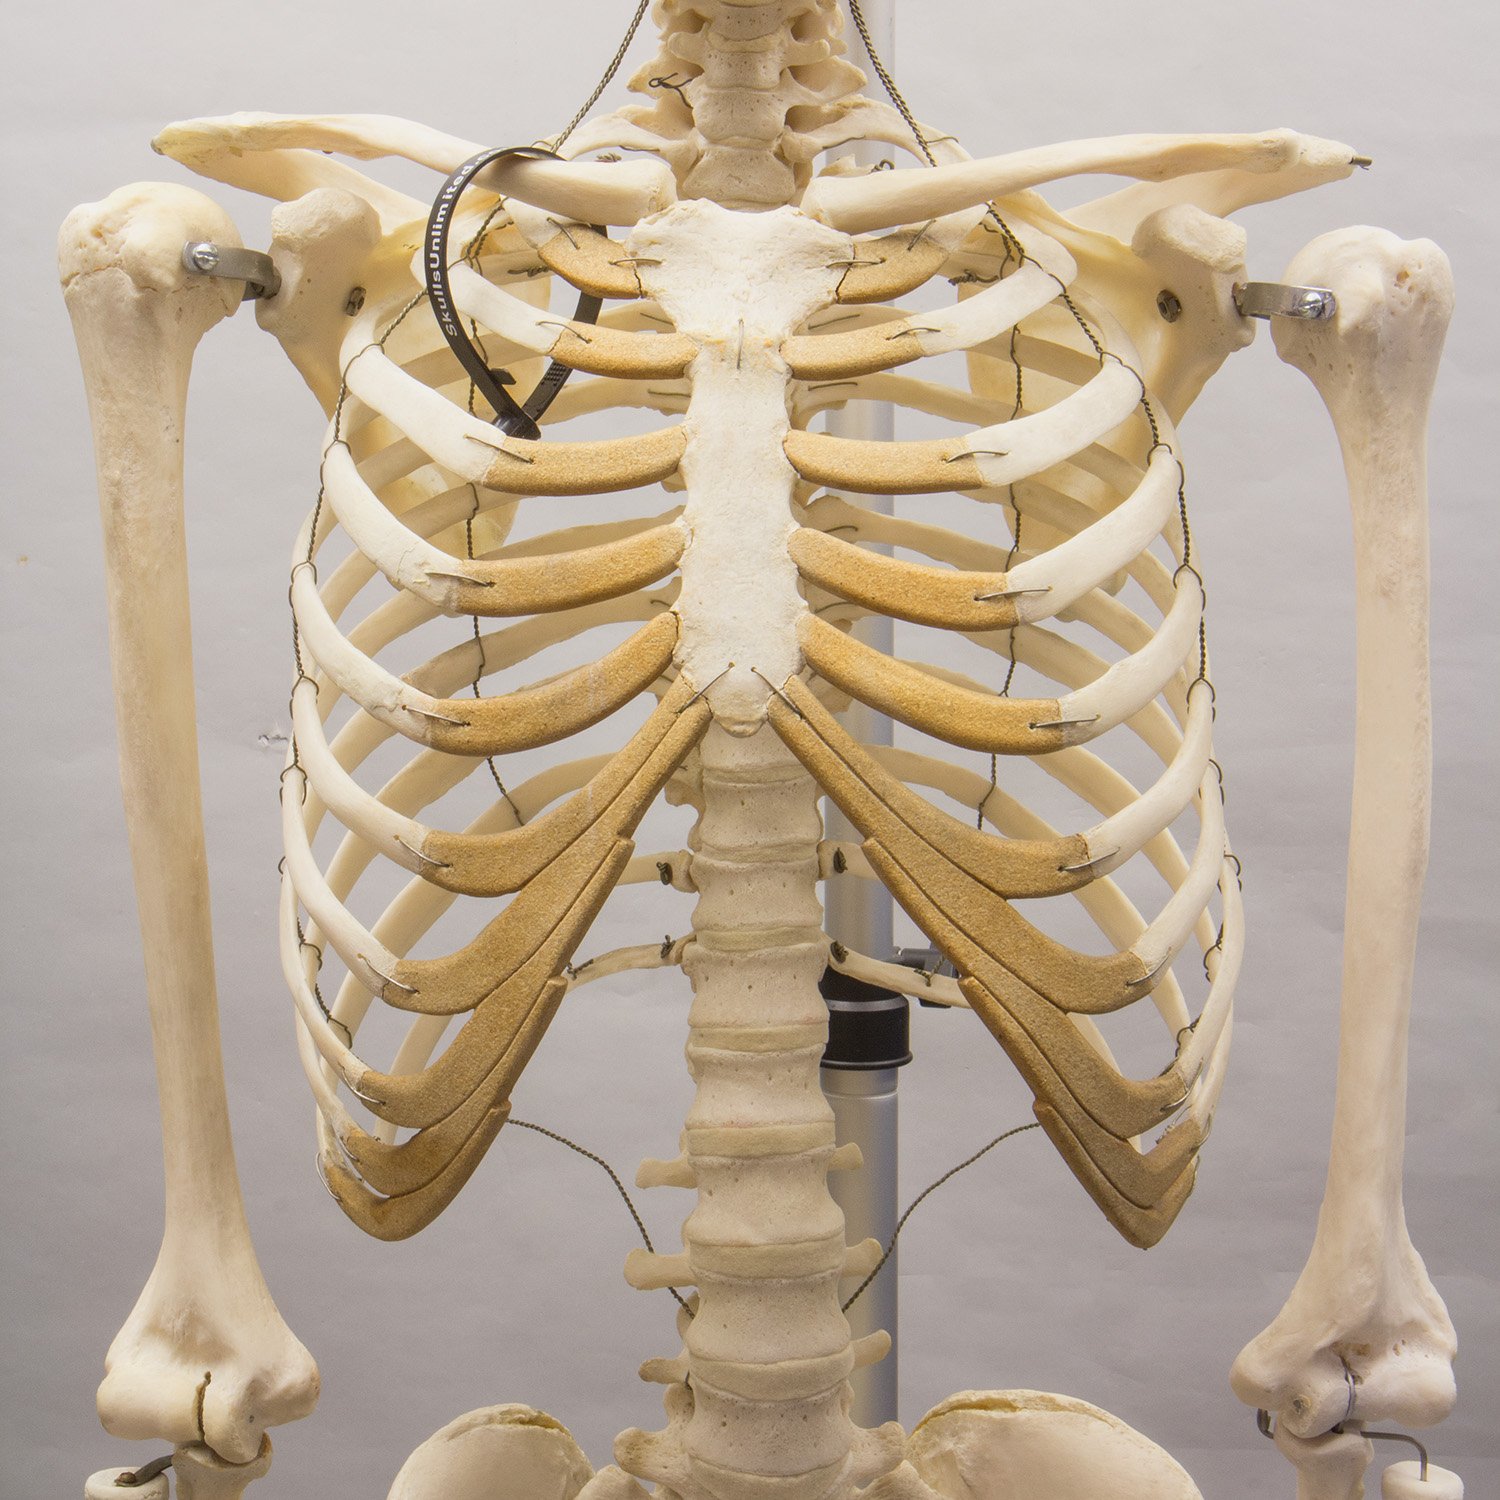 Free photo: Human Skeleton - Bones, Graphics, Human - Free Download